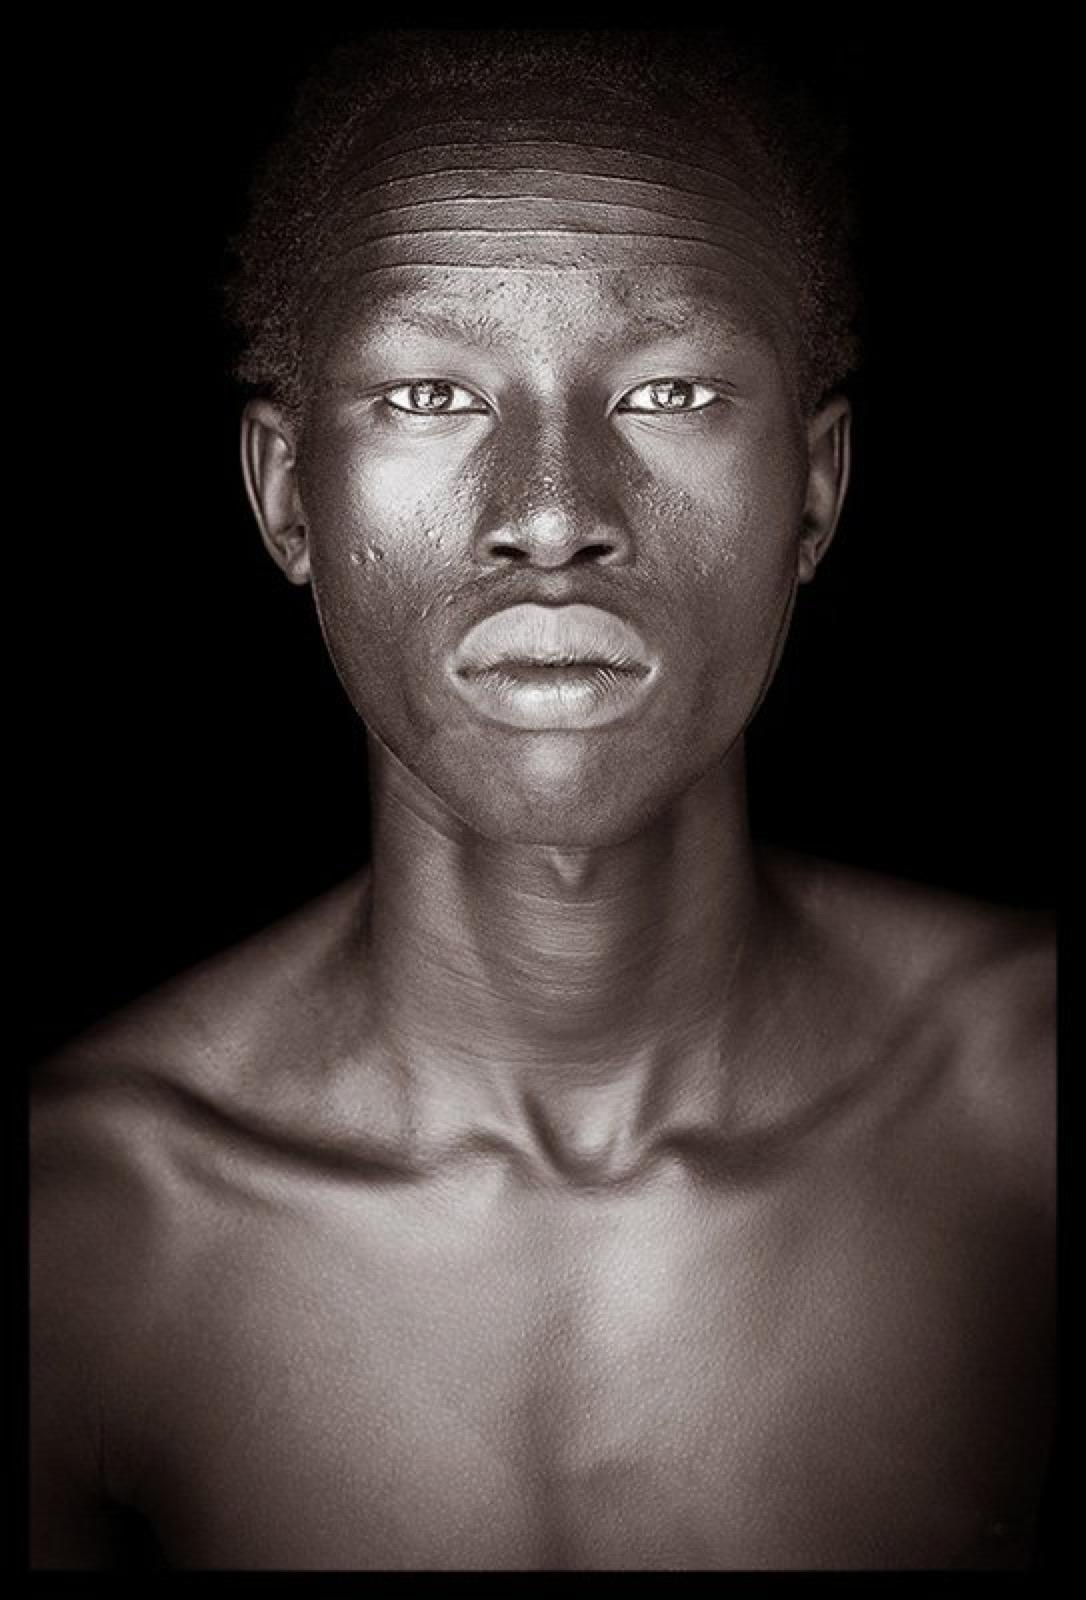 Ein junger Mann der Nuer-Kultur mit einer auffälligen Narbe auf der Stirn.  Das Foto wurde in Äthiopien aufgenommen, aber wie viele der Nuer wurde er durch den Konflikt aus seiner Heimat im Südsudan vertrieben.
John Kennys Arbeiten werden alle vor